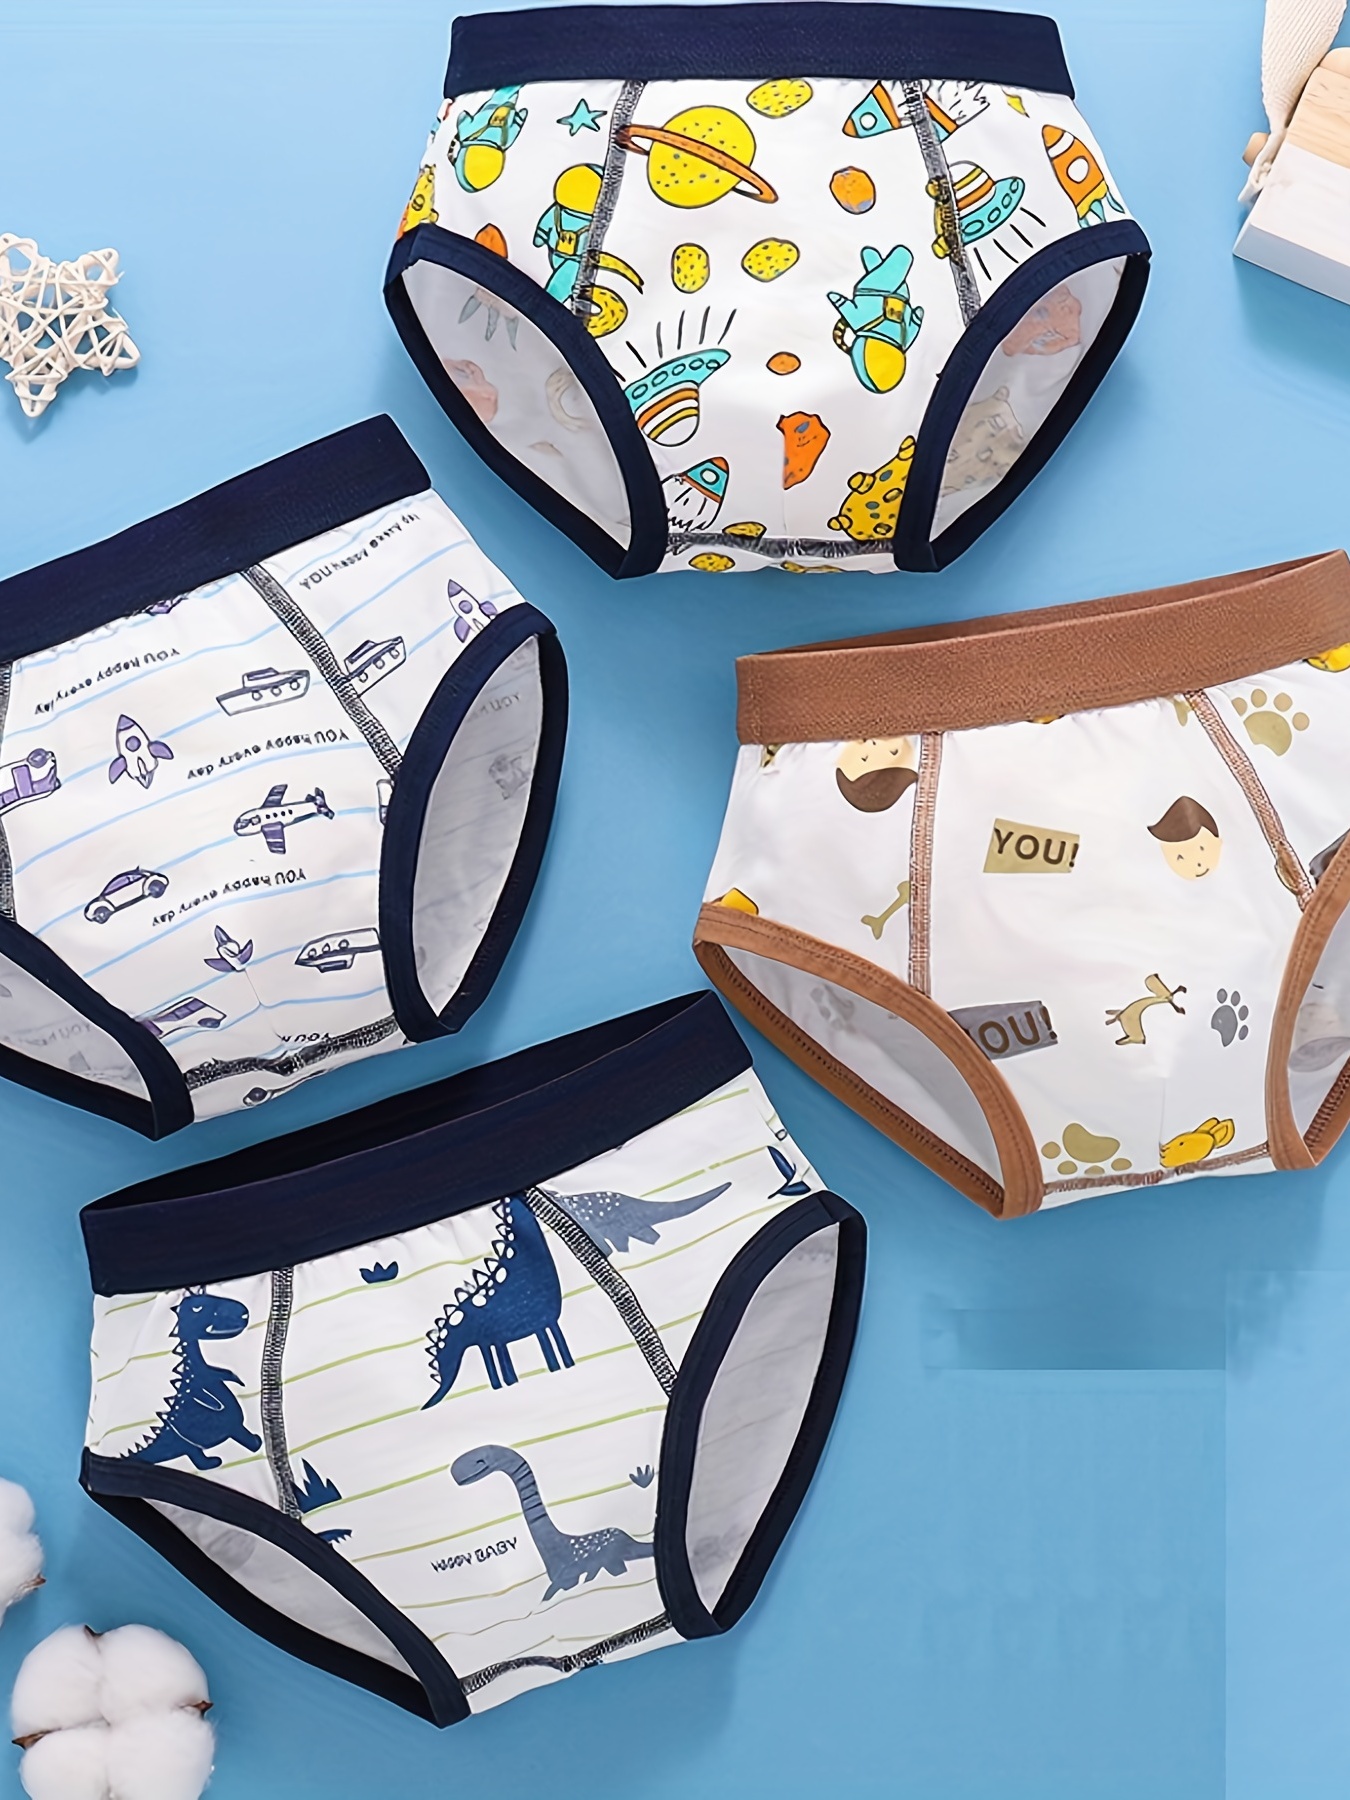 Baby Soft Underwear Little Boys Dinosaur Briefs Toddler Shark Undies  Children Truck Panties (Pack Of 6)